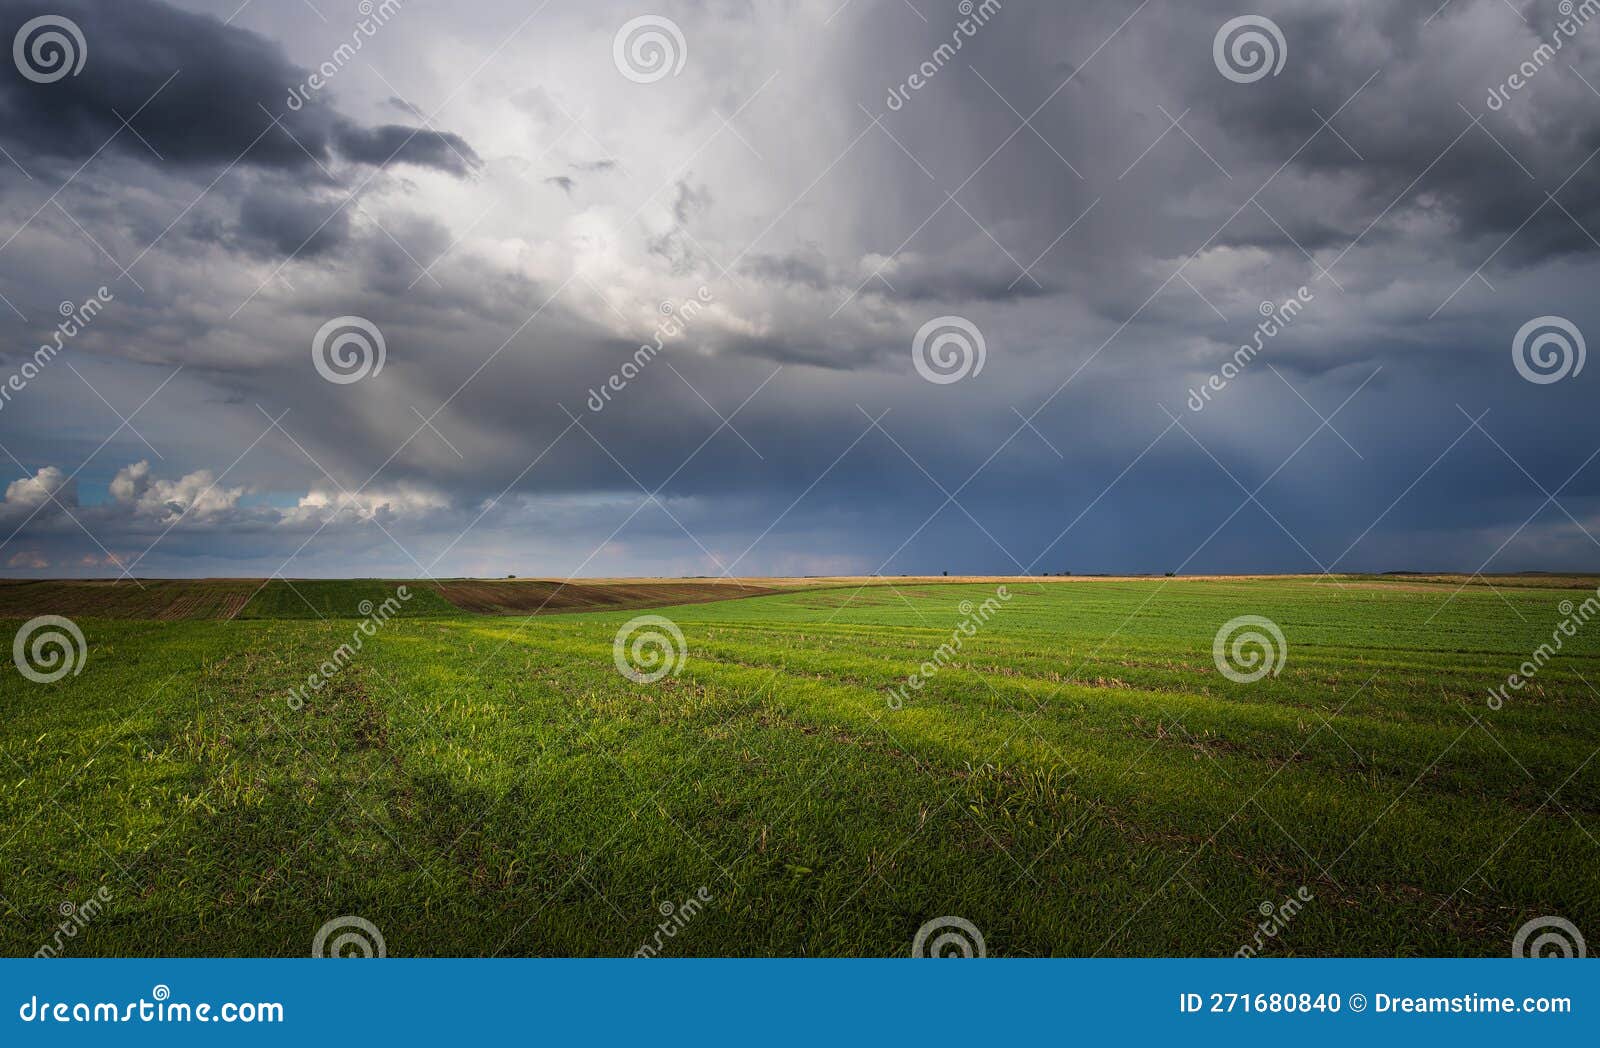 wheat field adn sky in early summer